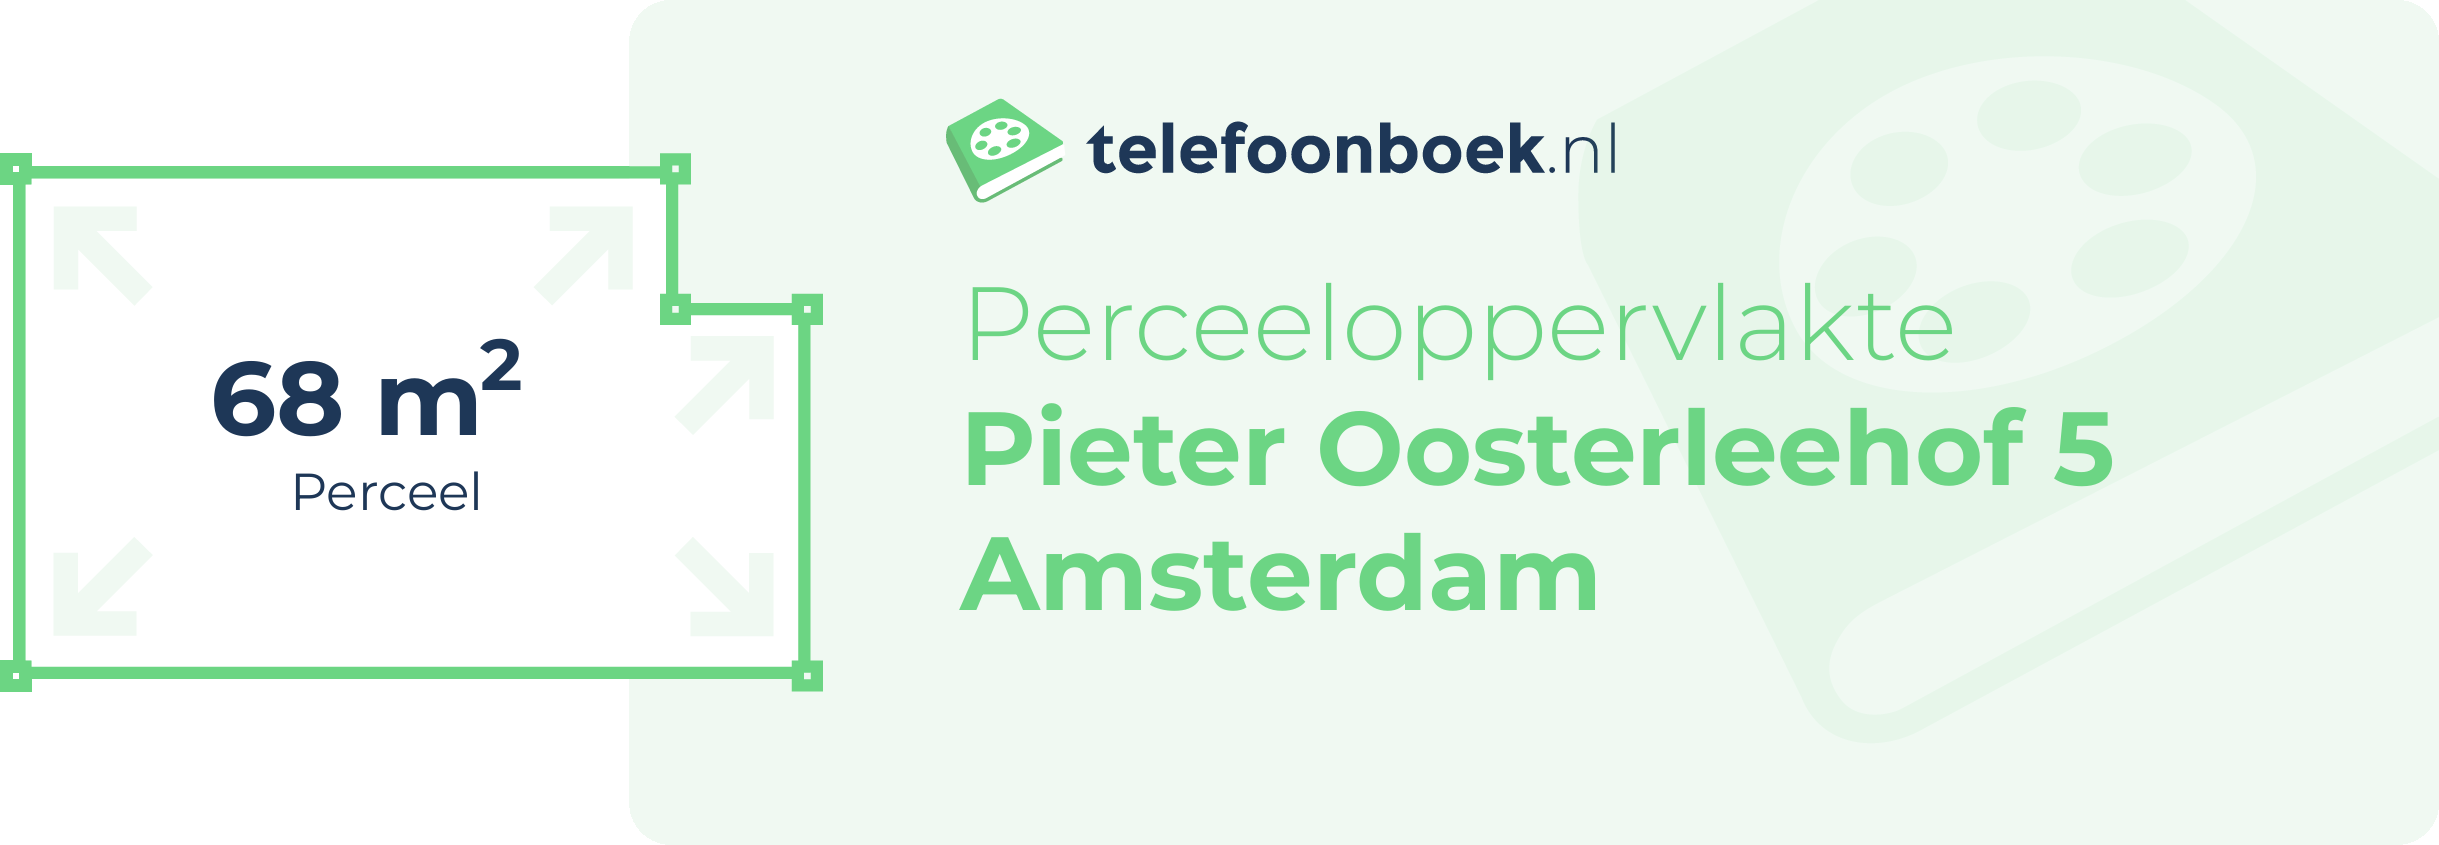 Perceeloppervlakte Pieter Oosterleehof 5 Amsterdam